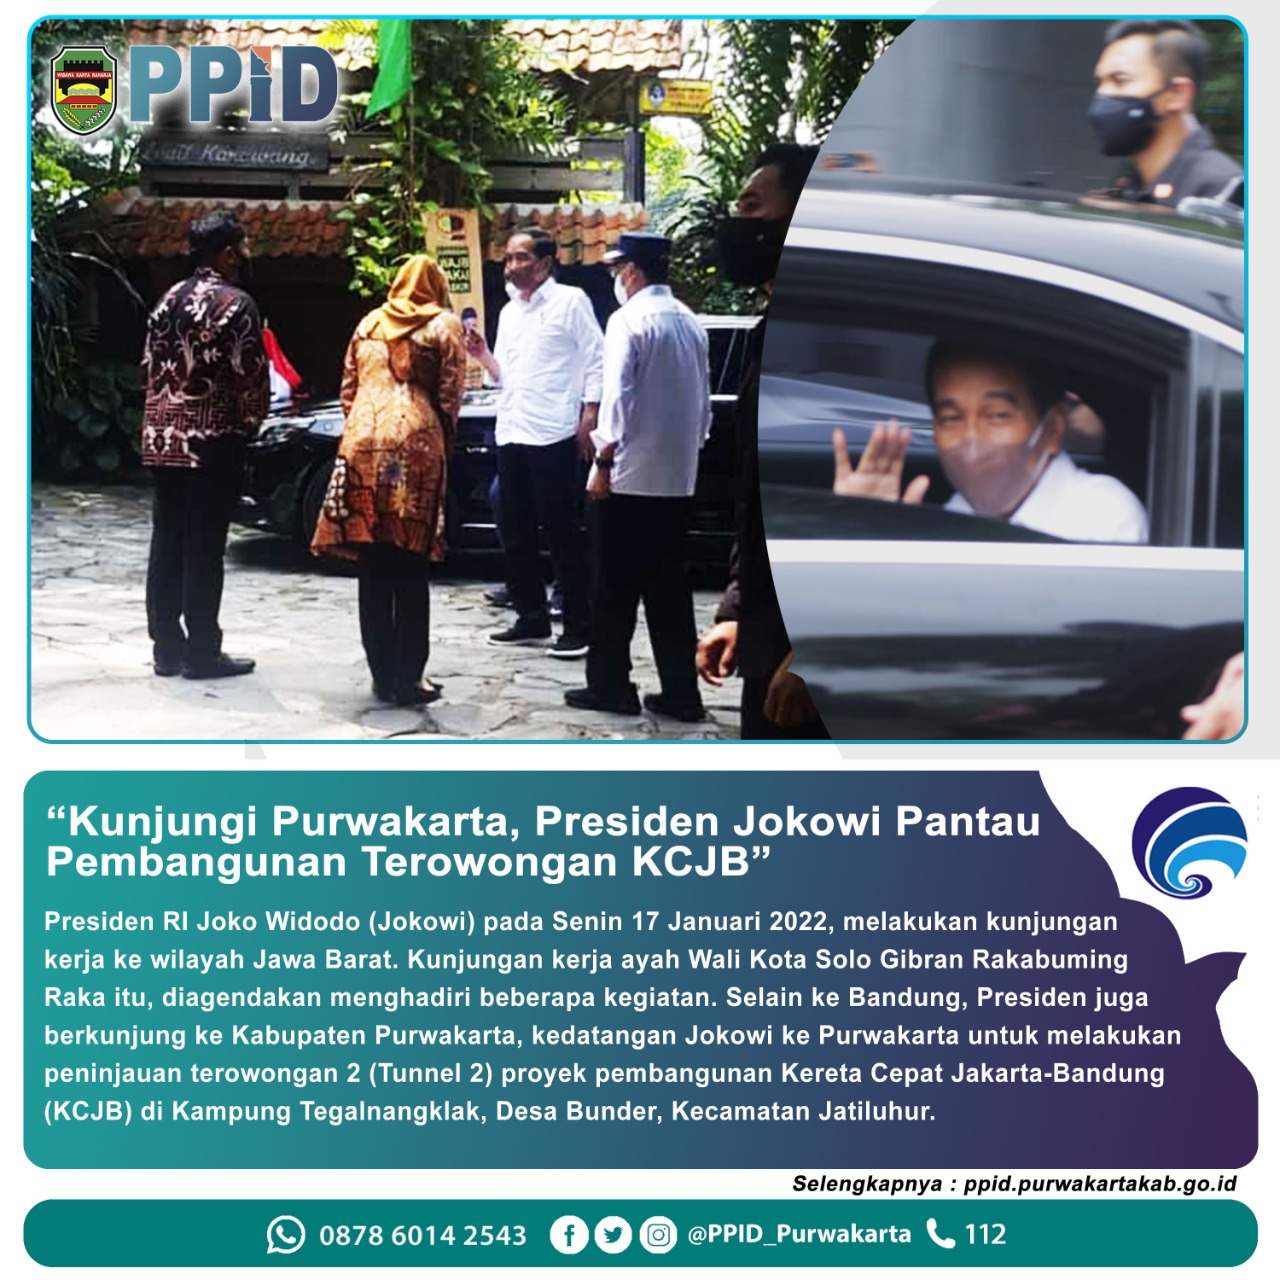 Kunjungi Purwakarta, Presiden Jokowi pantau Pembangunan Terowongan KJCB